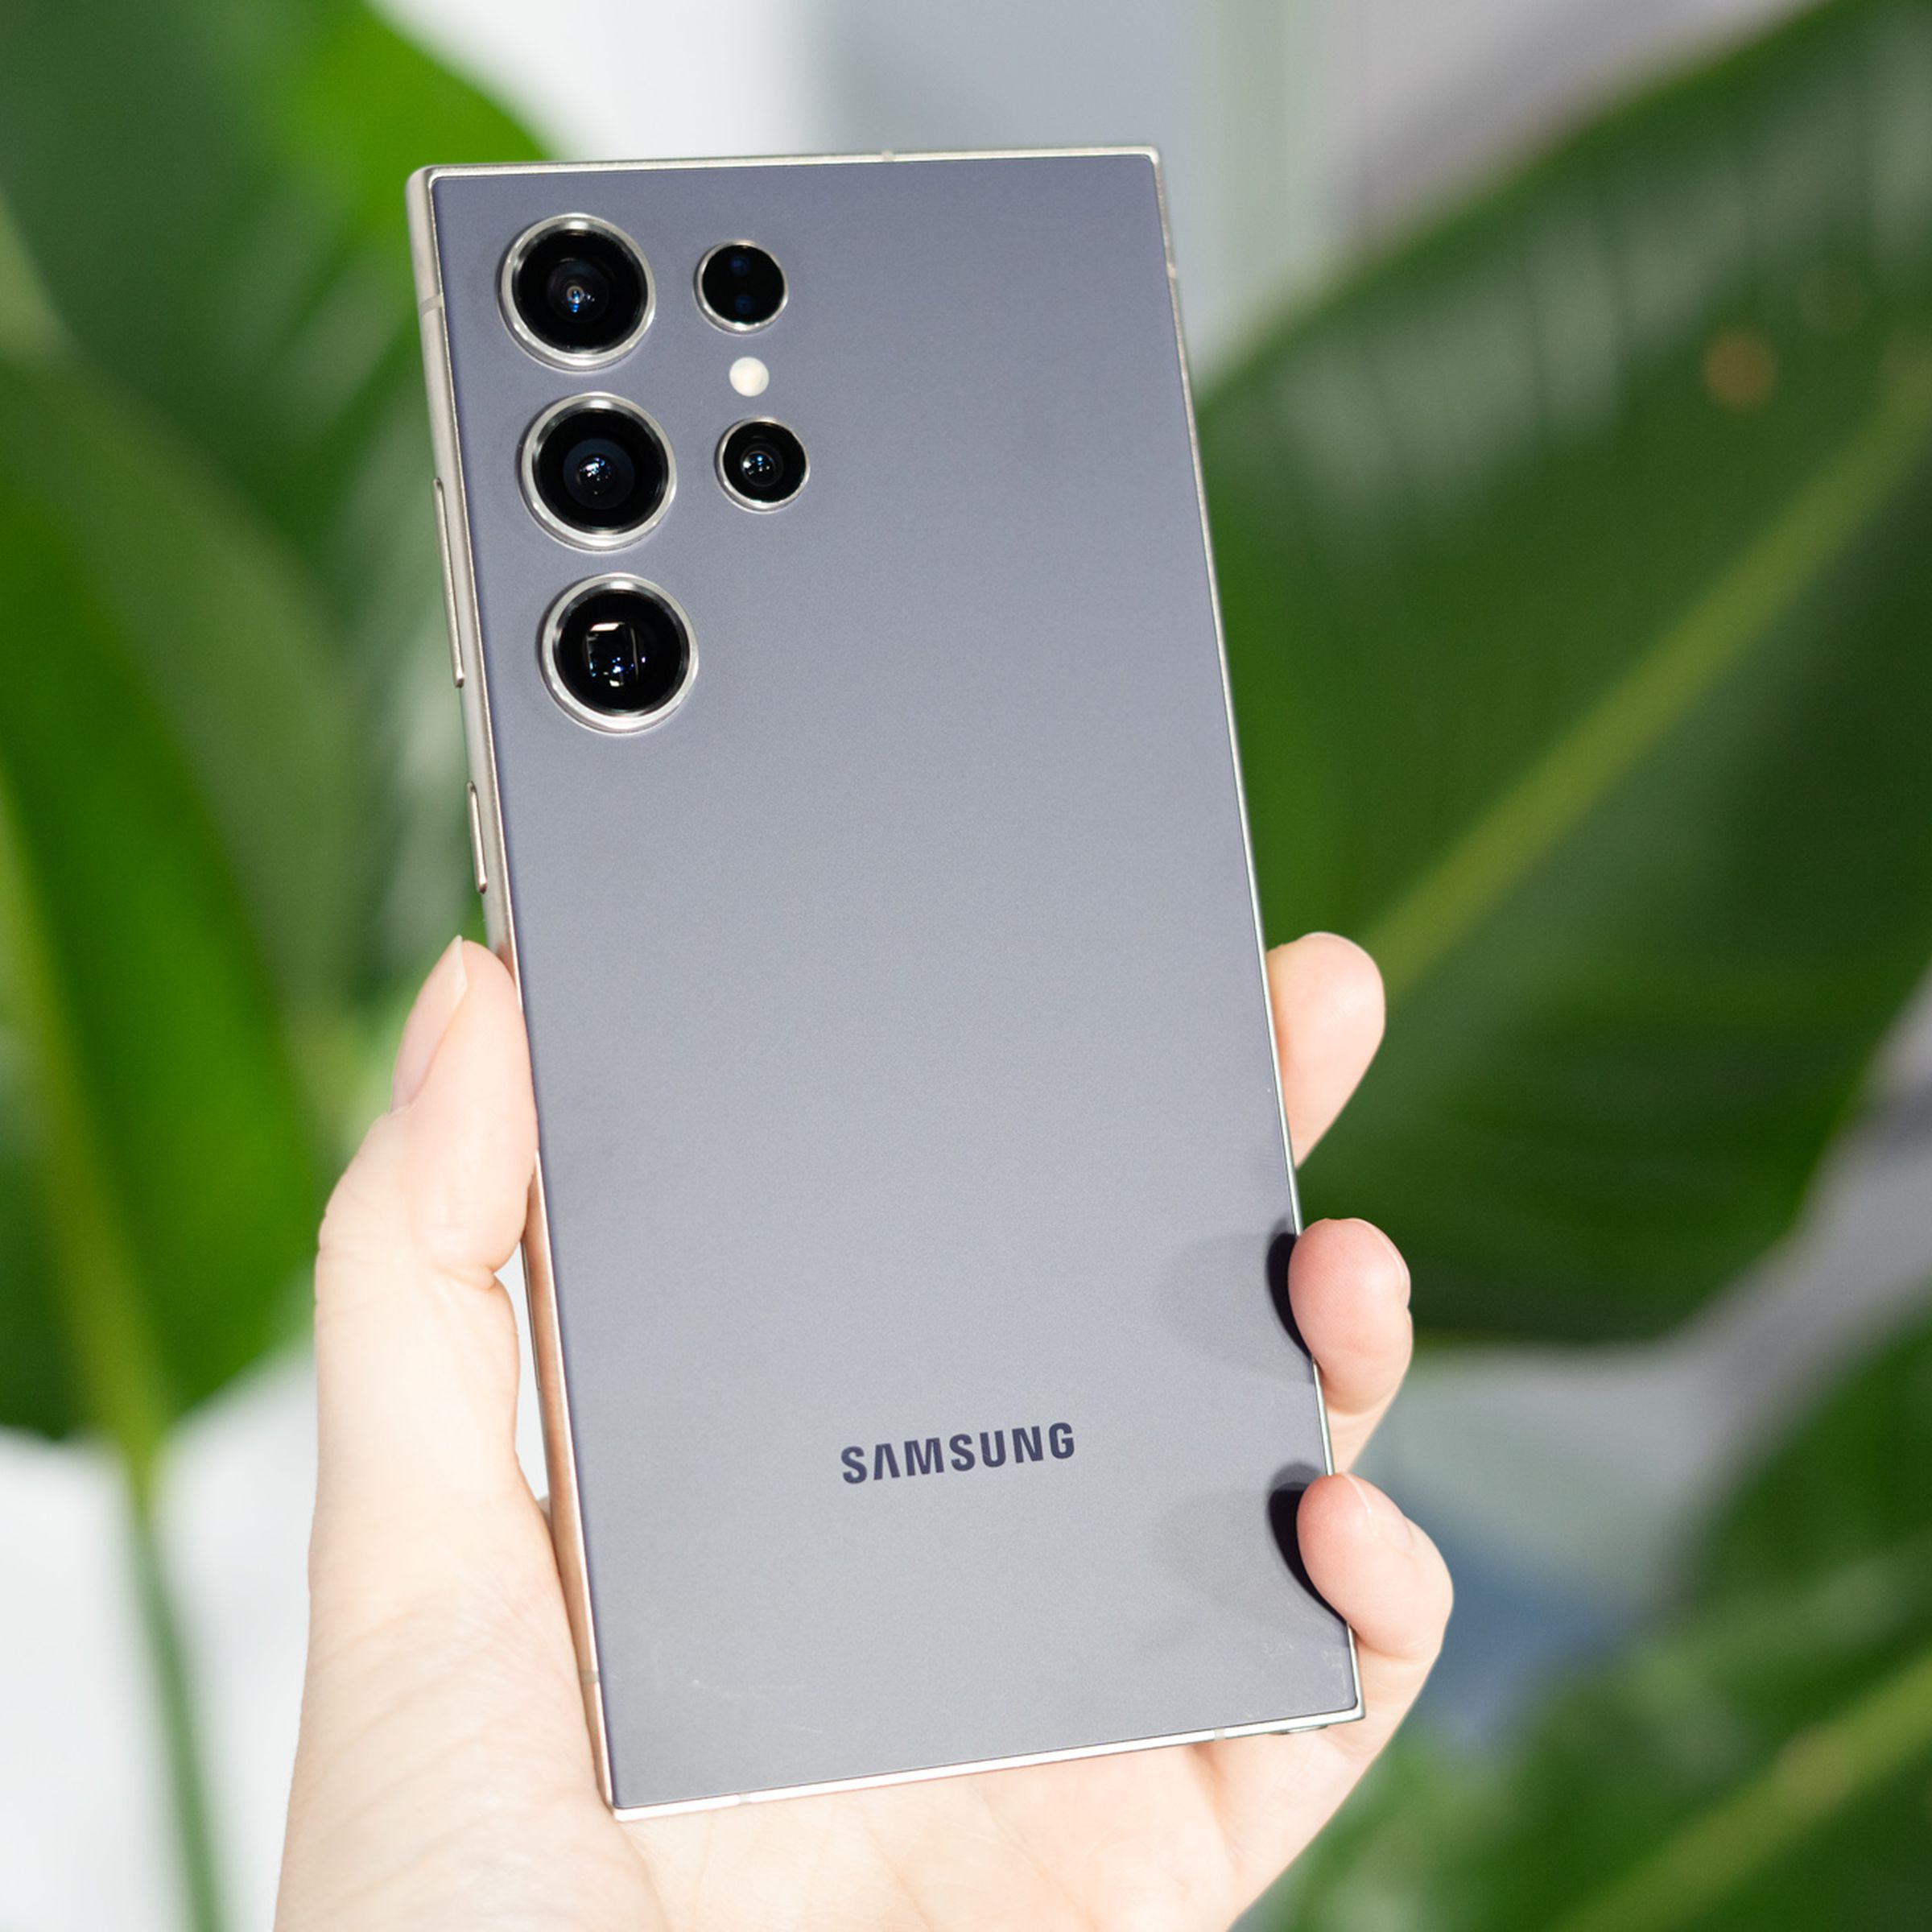 Samsung Galaxy S24 Ultra titanyum grisi renkte.